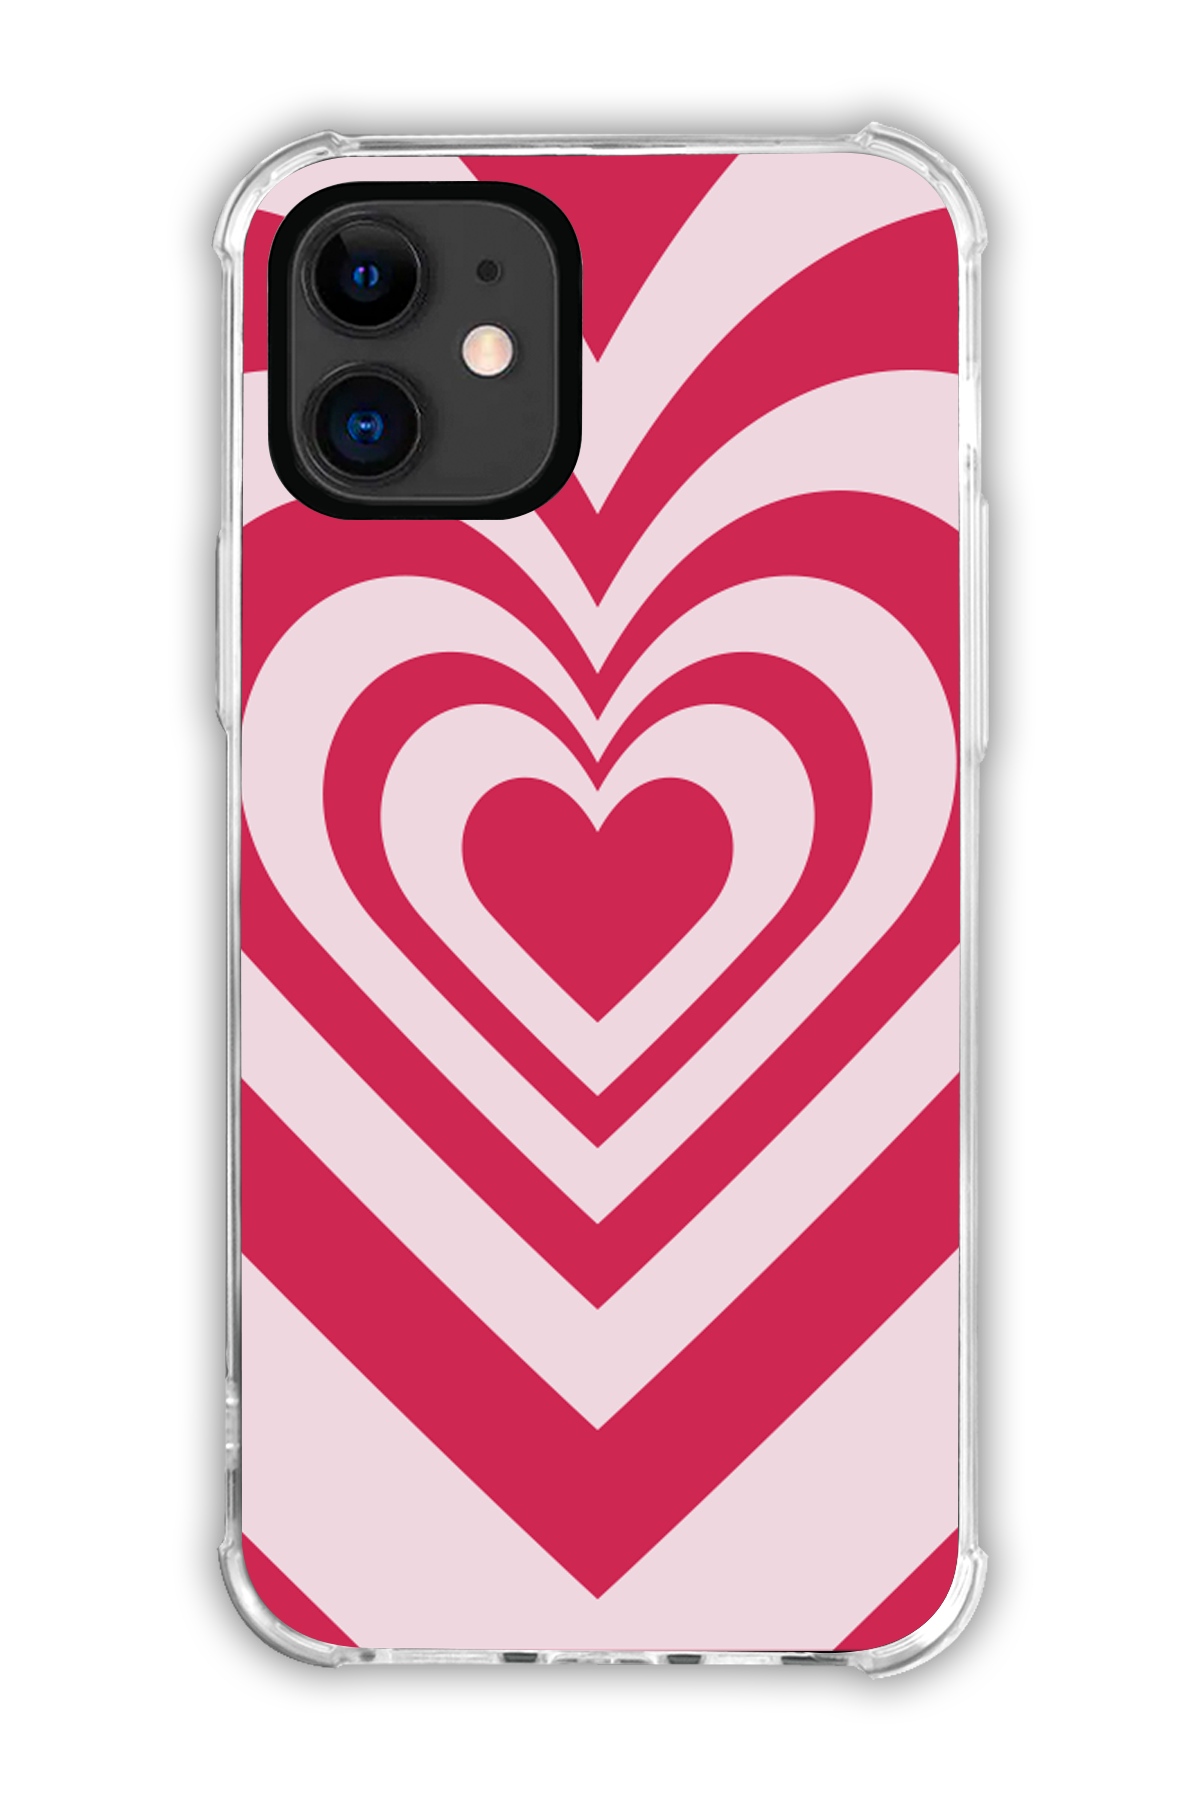 White - Valentine's Daycase - iPhone 11 - Transparent Case